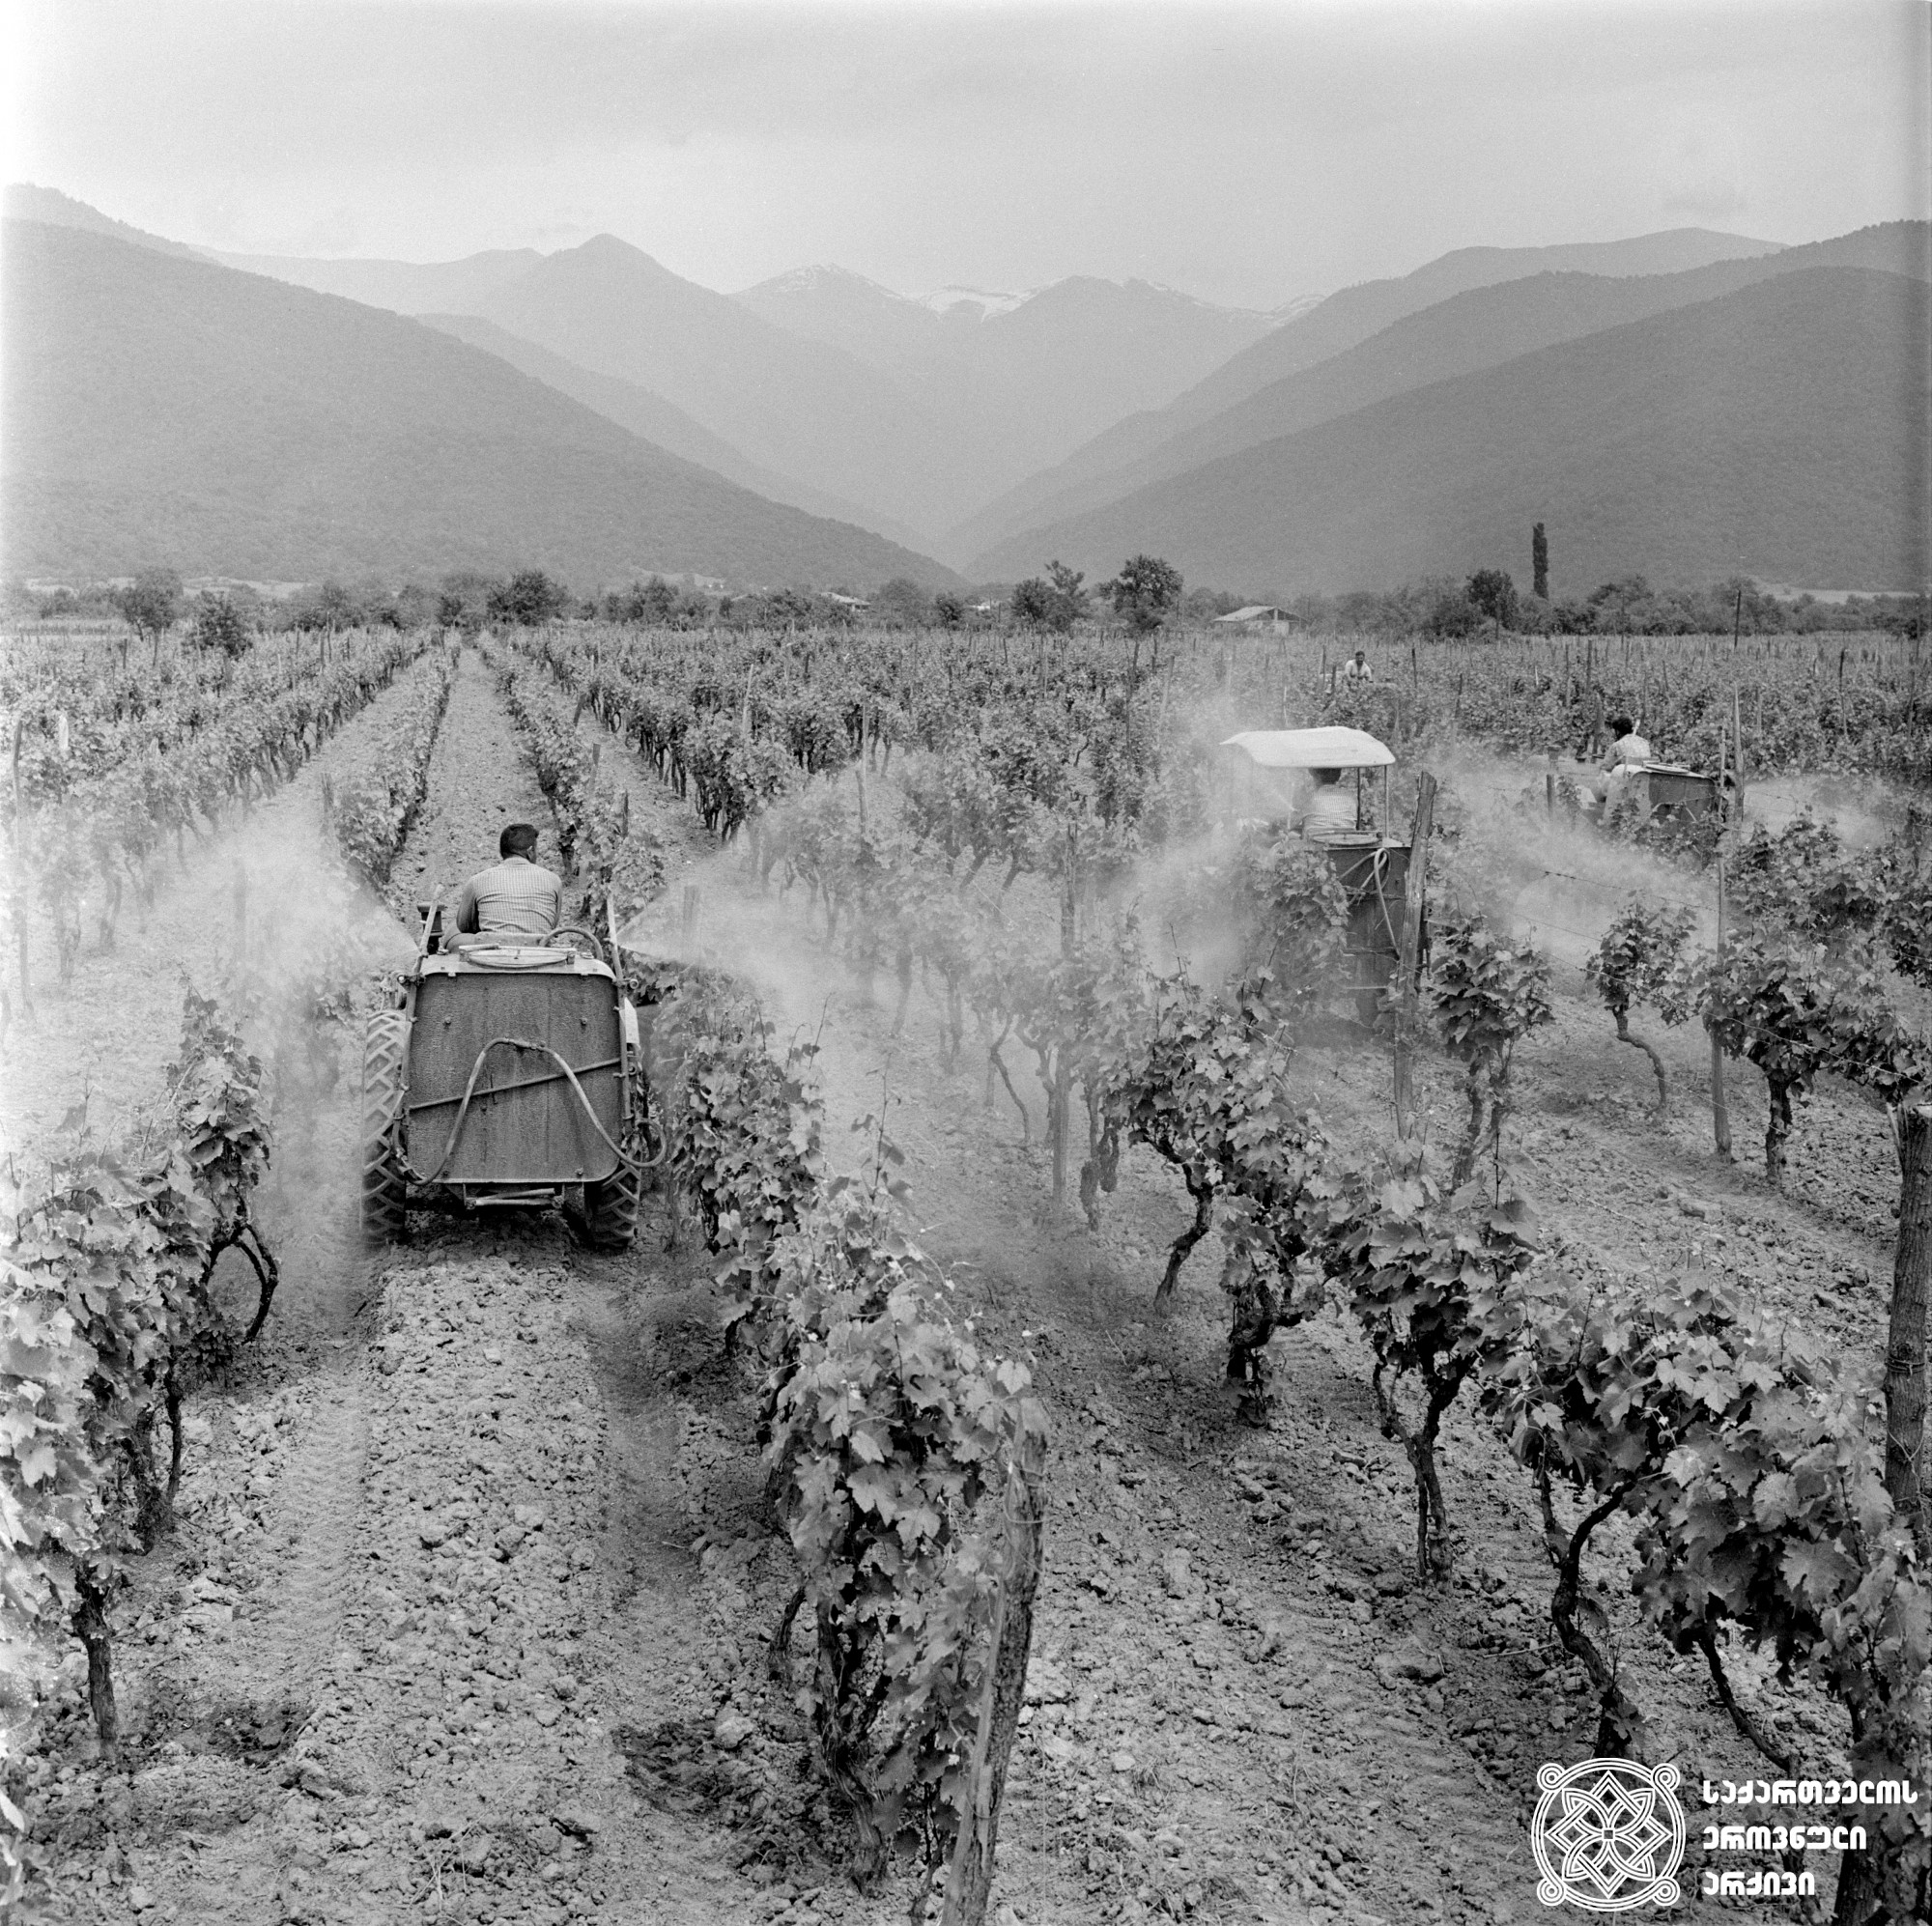 ვენახის მექანიზებული შეწამვლა <br>
ფოტო: სერგო თევზაძე <br>
1970 წელი <br>
Mechanized spraying of the vineyard <br> 
Photo by Sergo Tevzadze <br>
1970